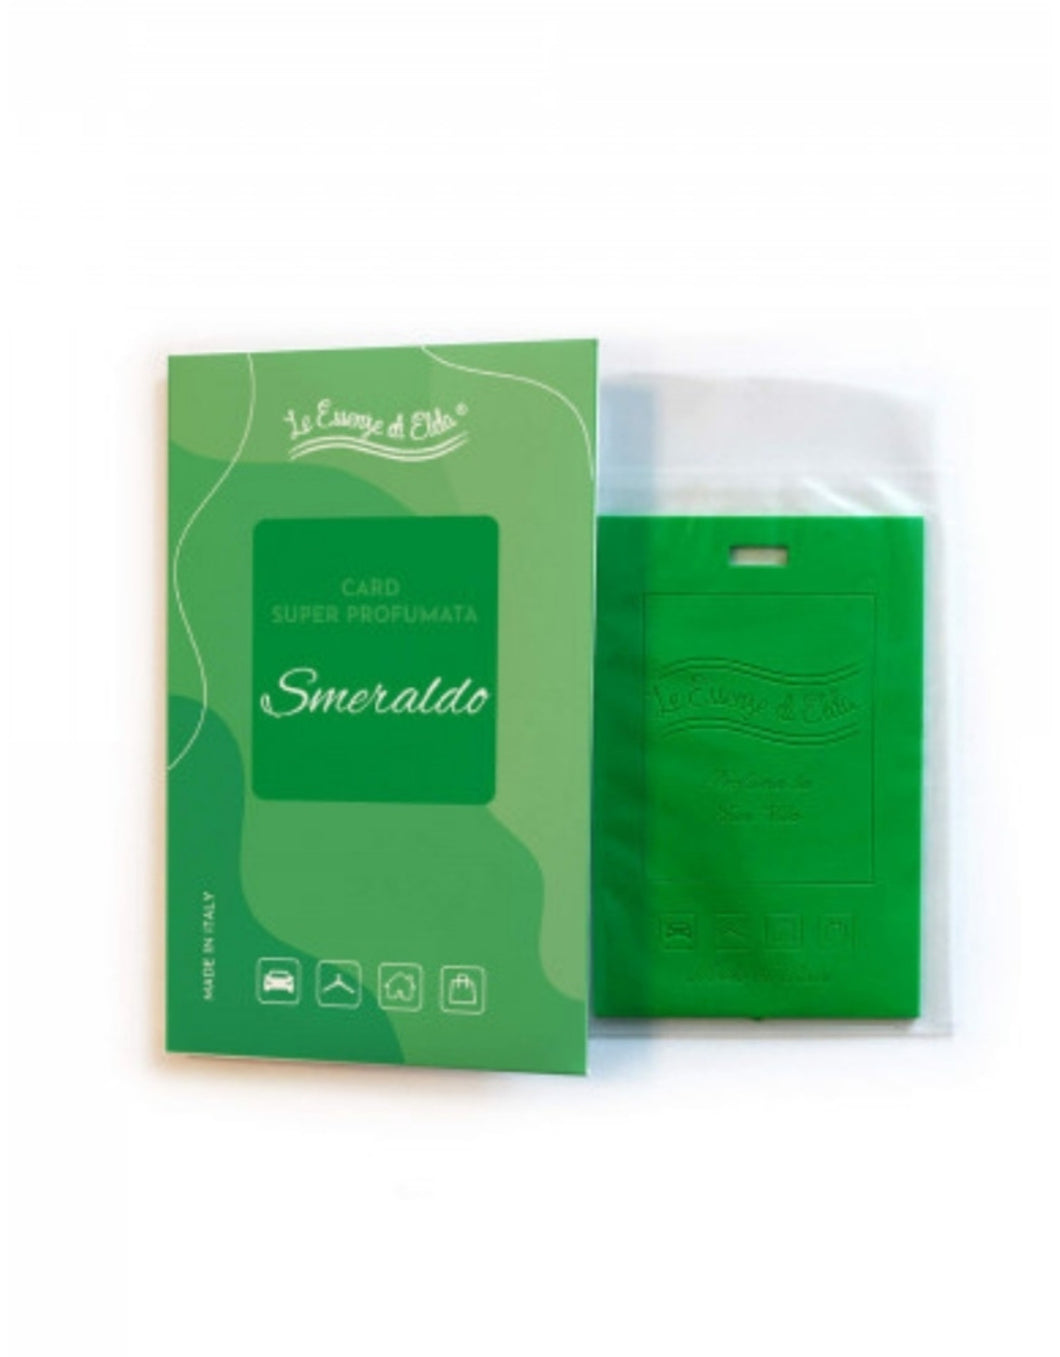 Wasparfum - Smeraldo Geurkaart